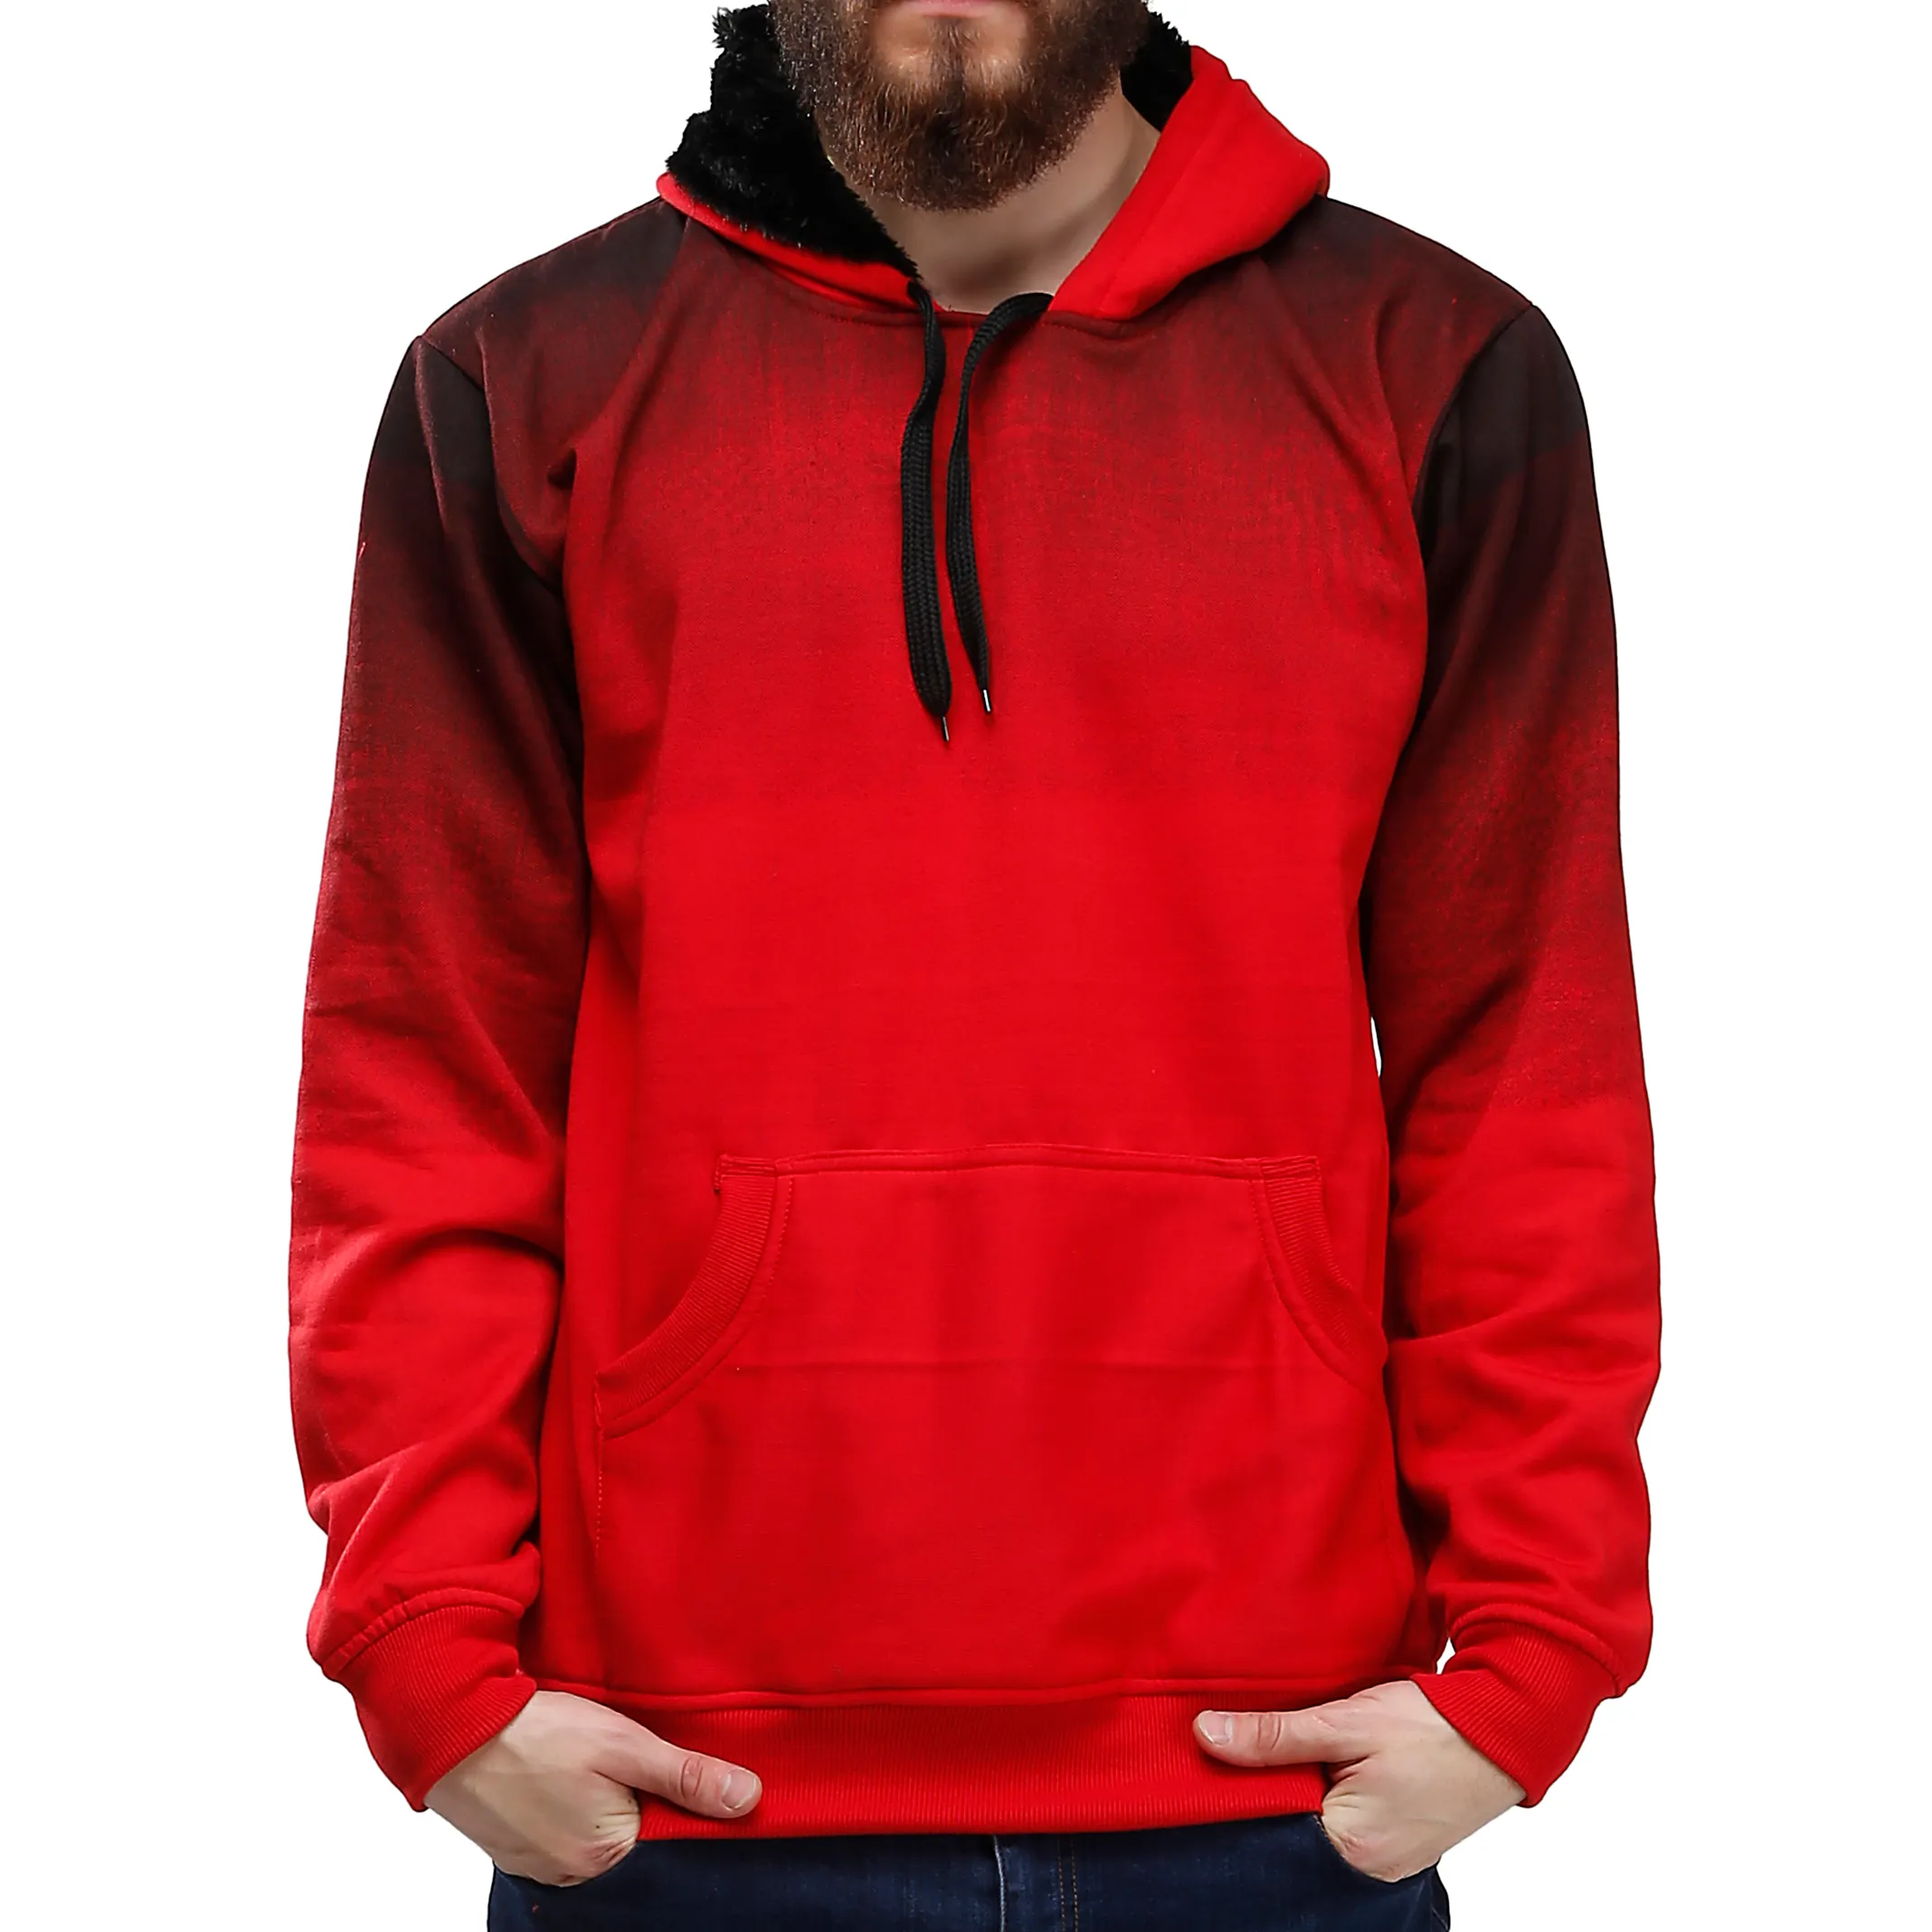 Custom Hoodies Hip Hop Hoodie Long Sleeve Hooded Printing Fashion Sweatshirts for Men CARTOON Western Pullover Wholesale Best